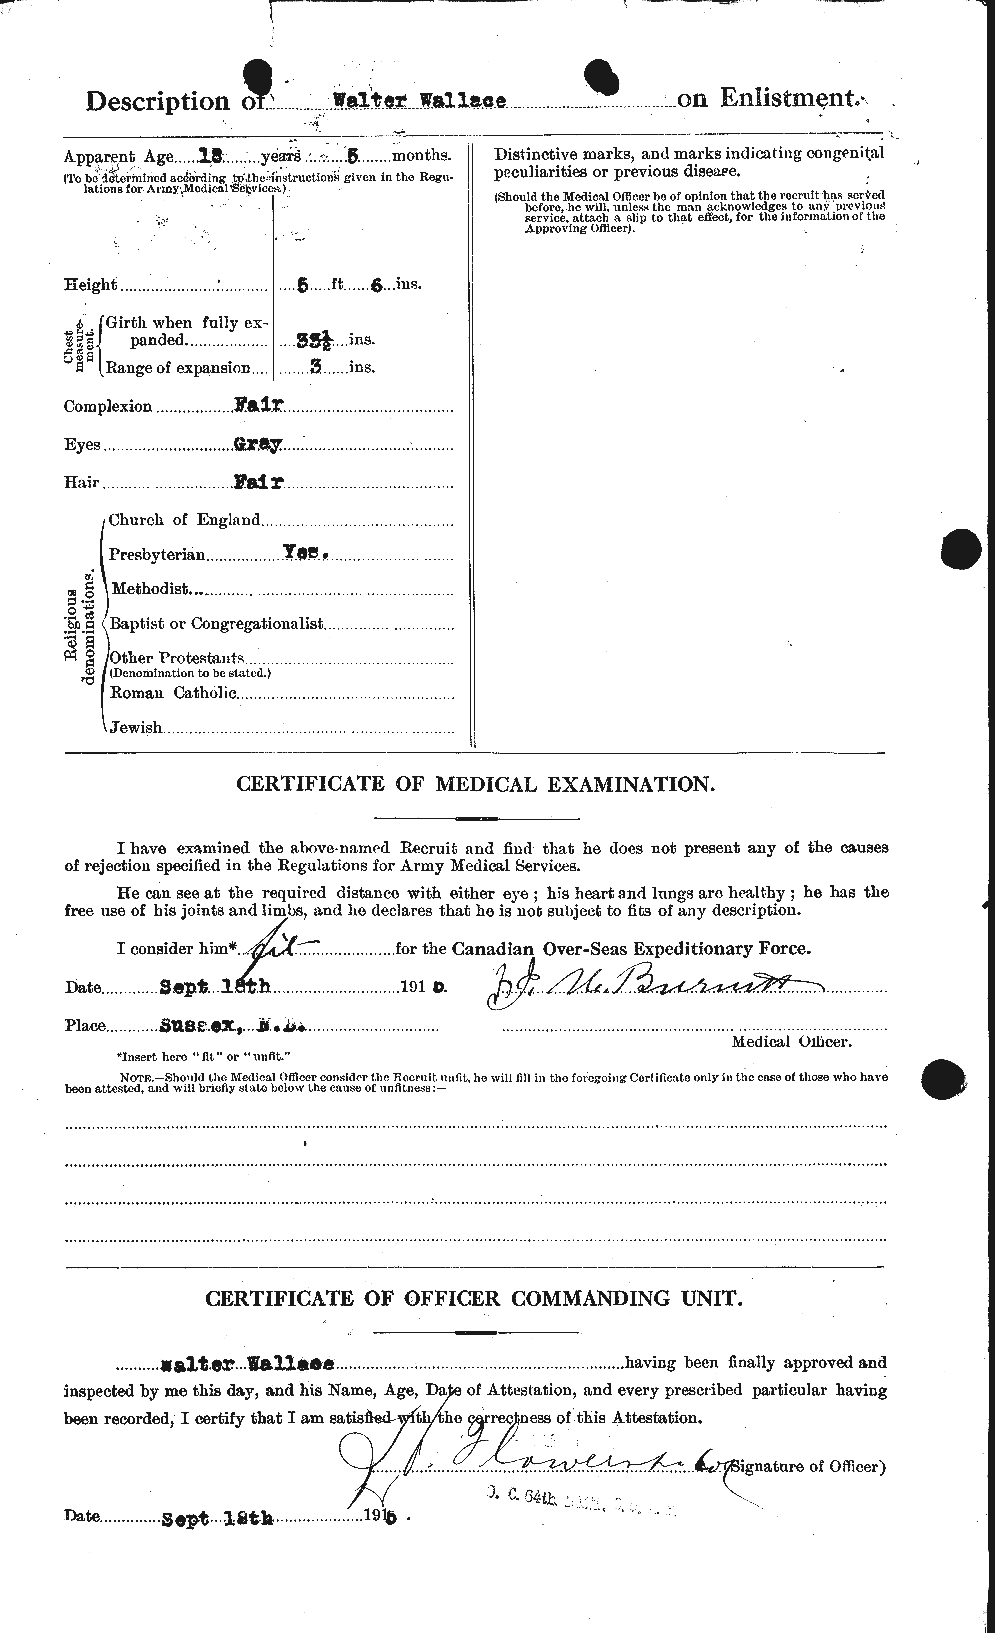 Dossiers du Personnel de la Première Guerre mondiale - CEC 660685b